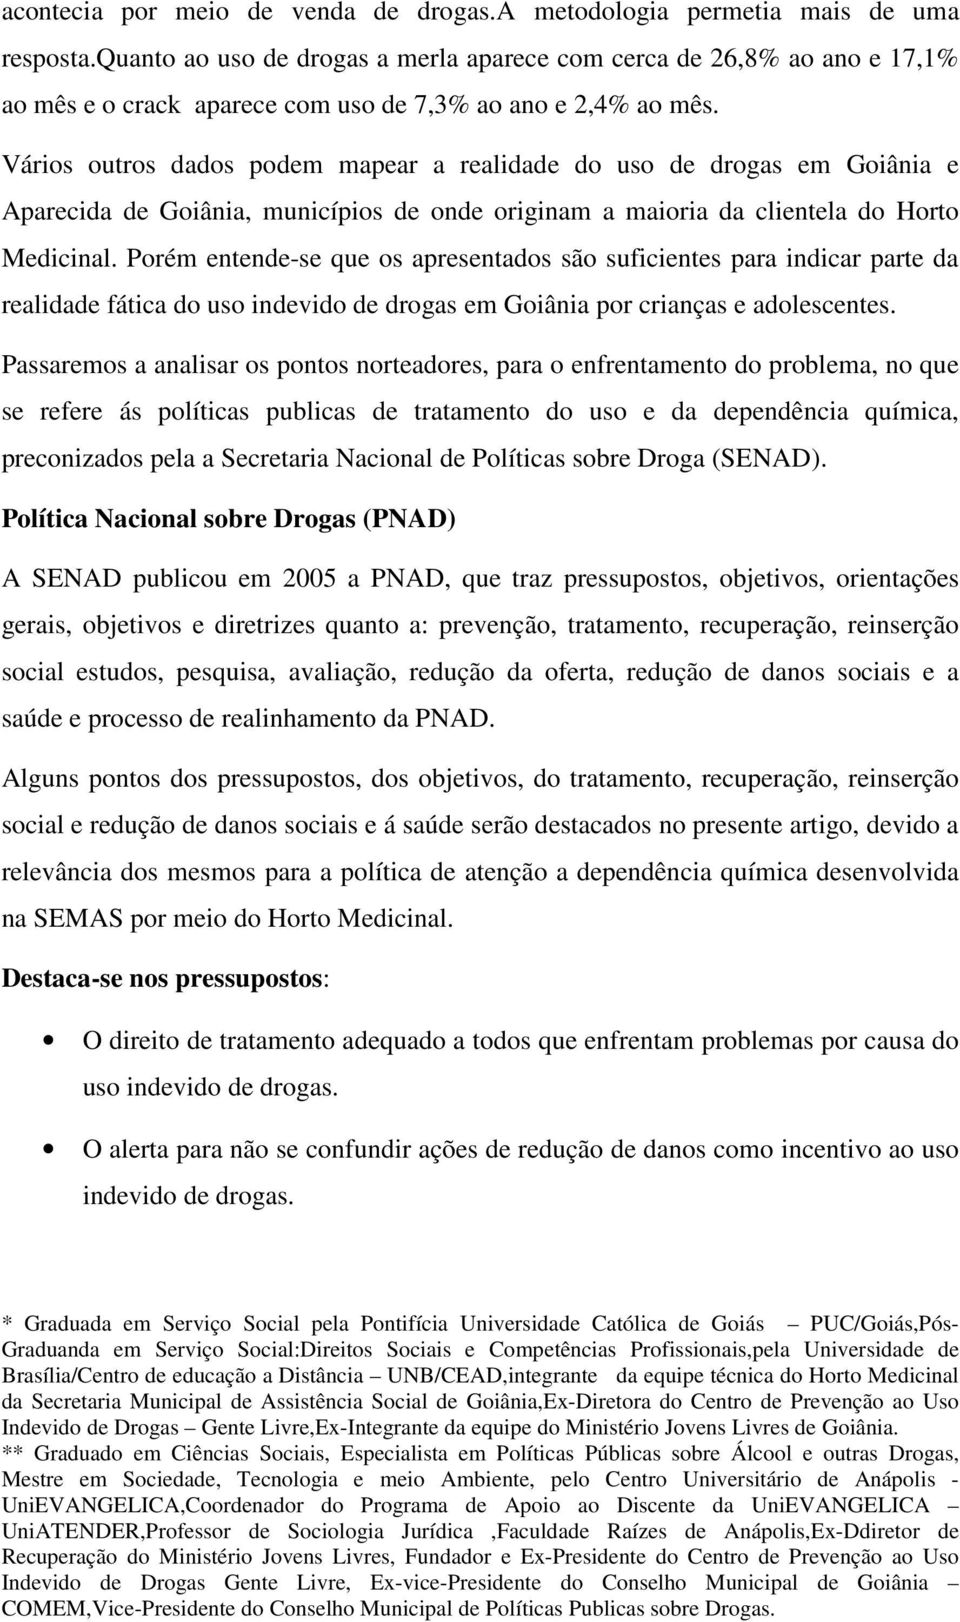 Vários outros dados podem mapear a realidade do uso de drogas em Goiânia e Aparecida de Goiânia, municípios de onde originam a maioria da clientela do Horto Medicinal.